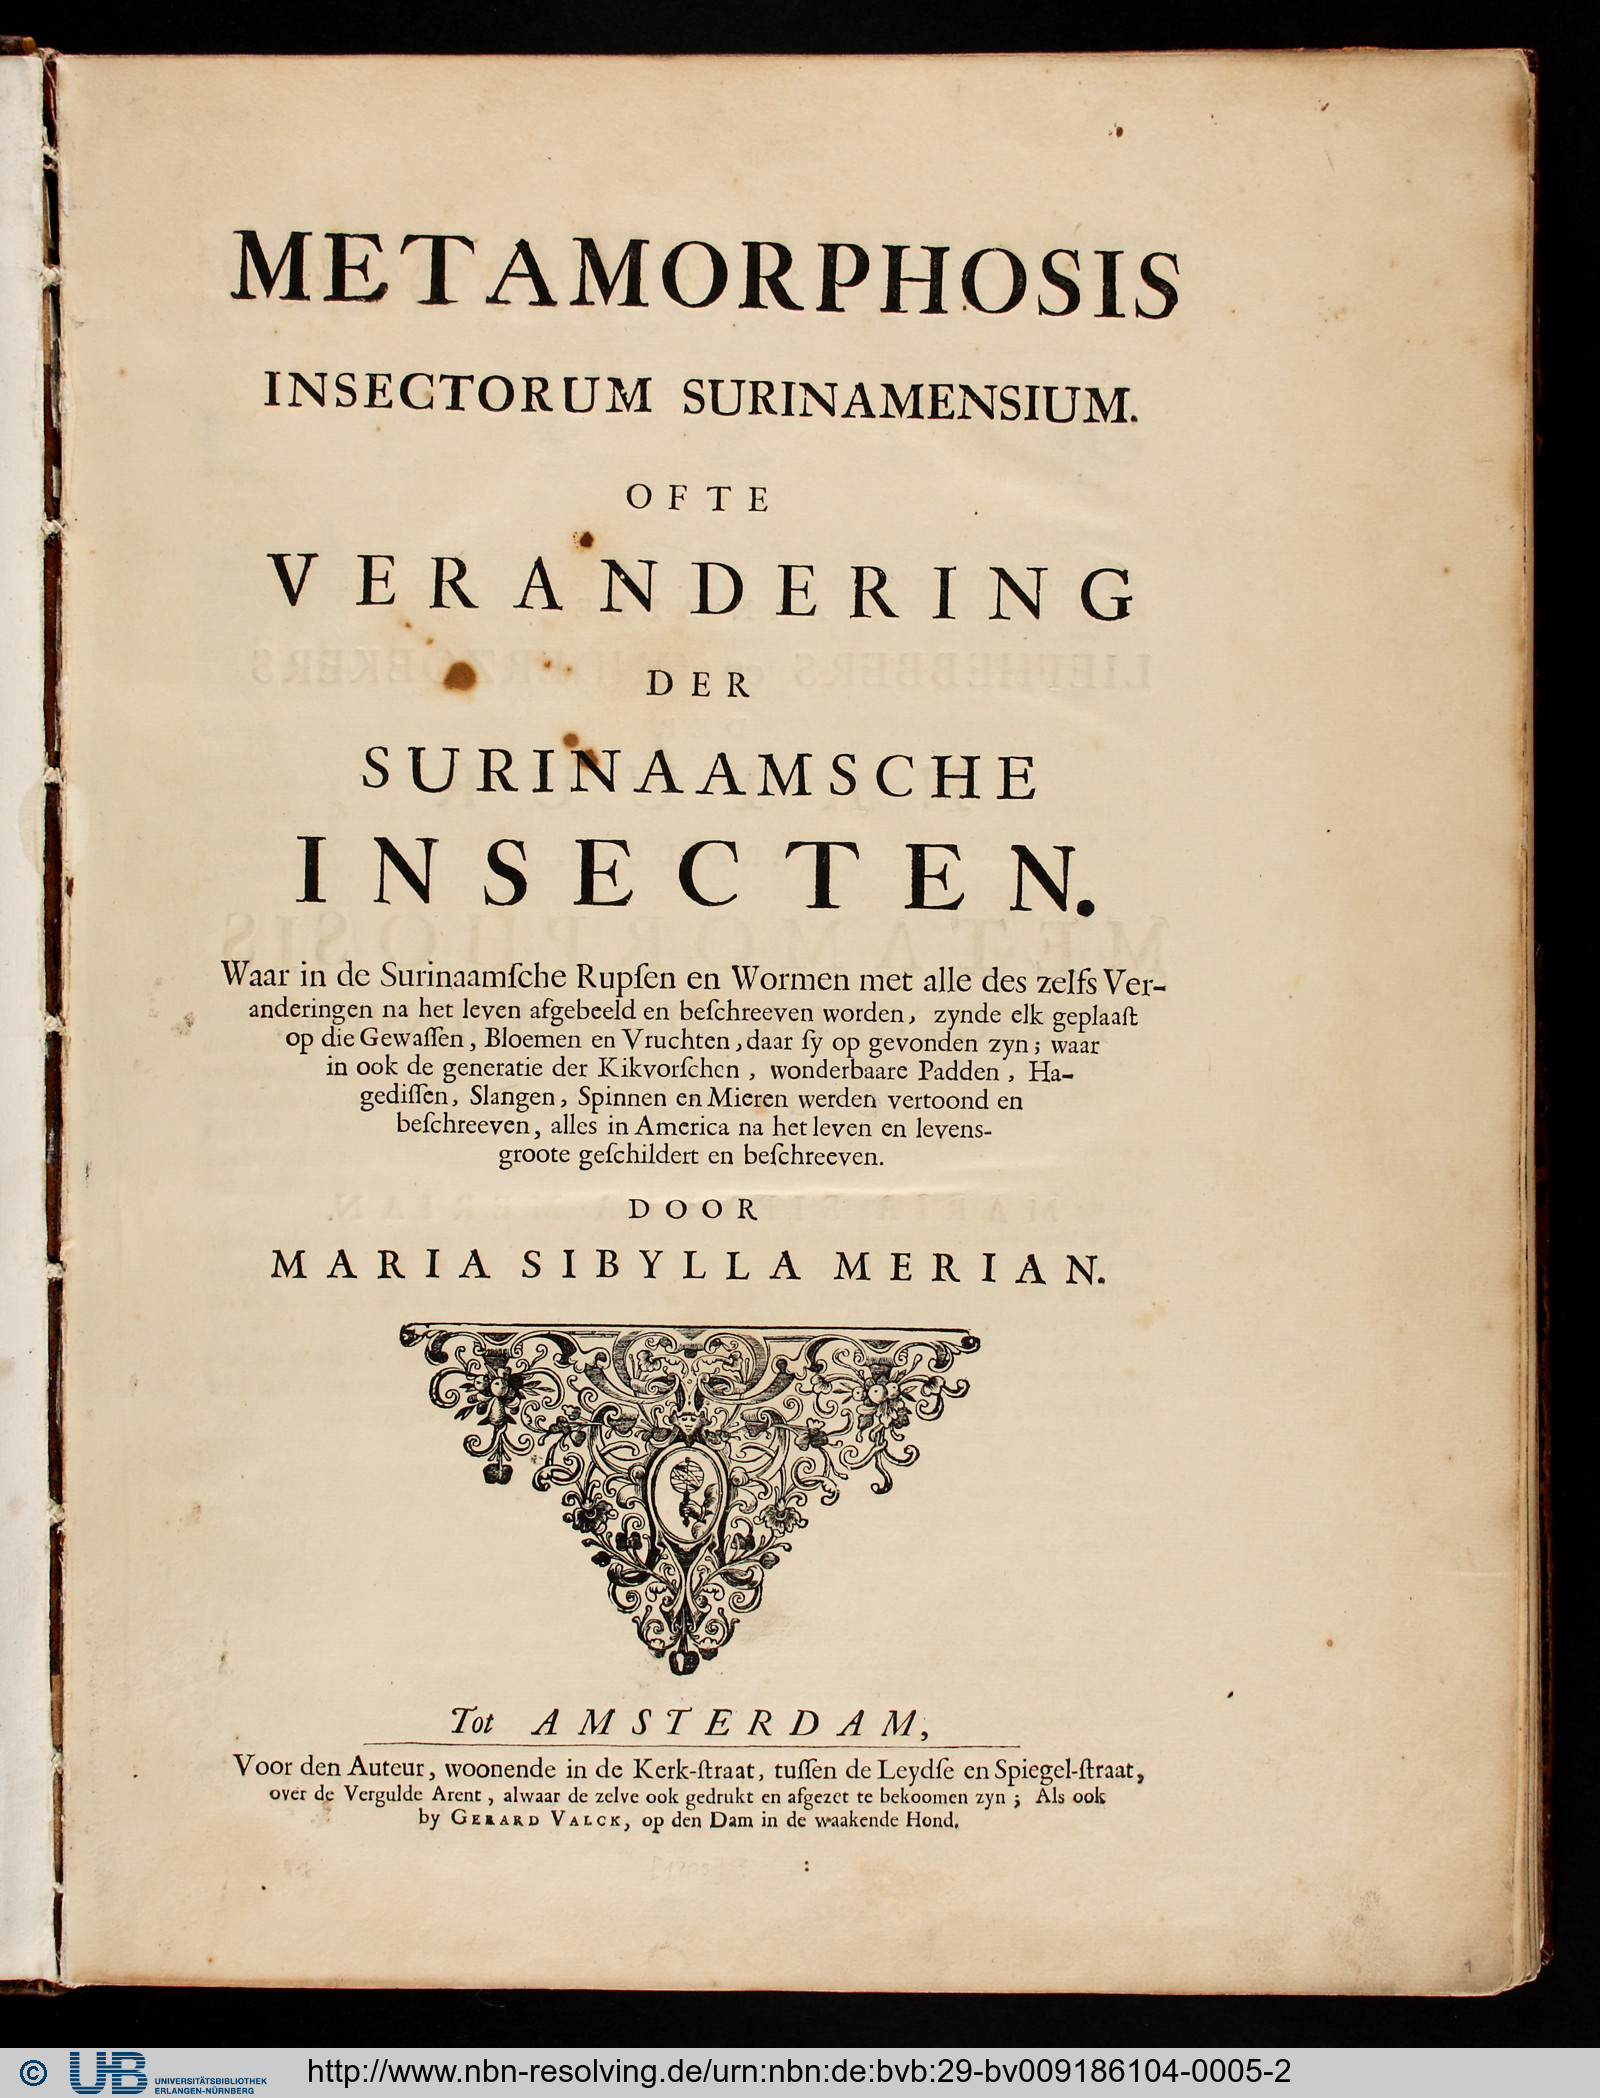 Metamorphosis insectorum surinamensium,Titelblatt, Amsterdam, 1705 (Bild: FAU/UB)